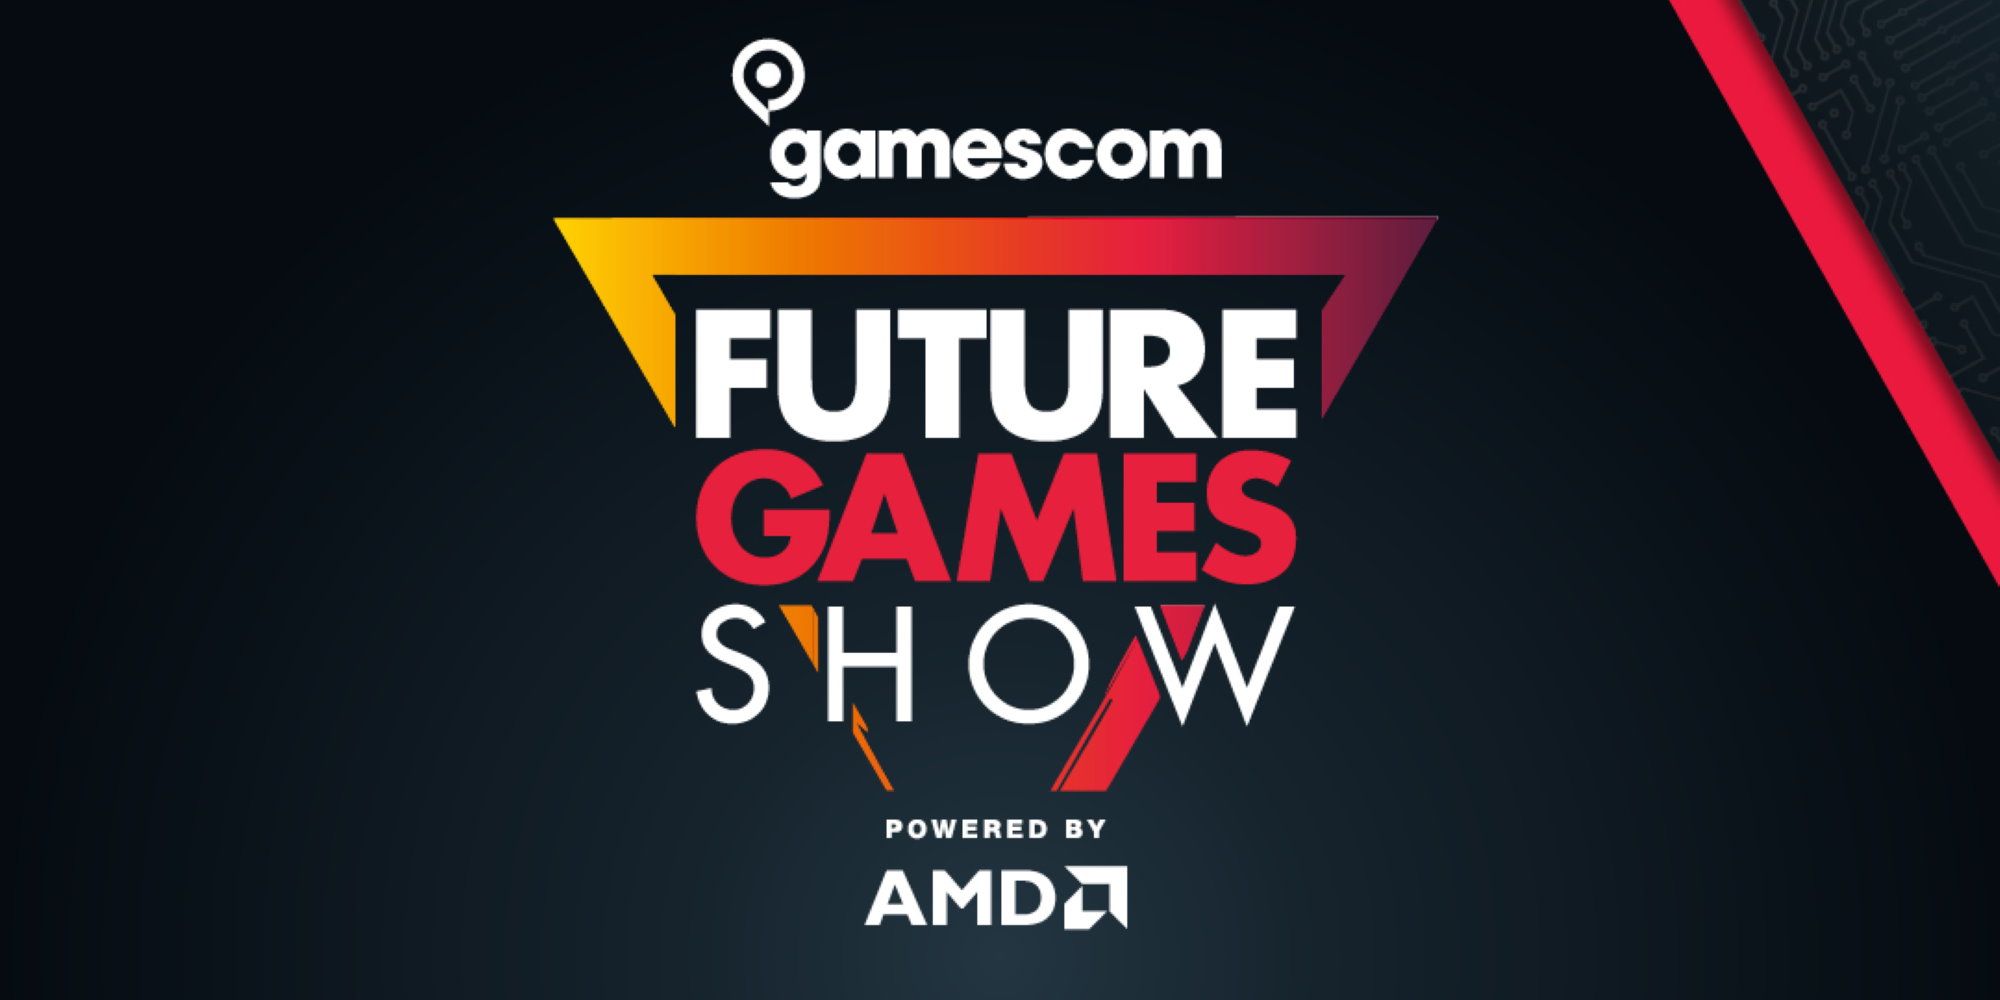 Gamescom Future Games Show